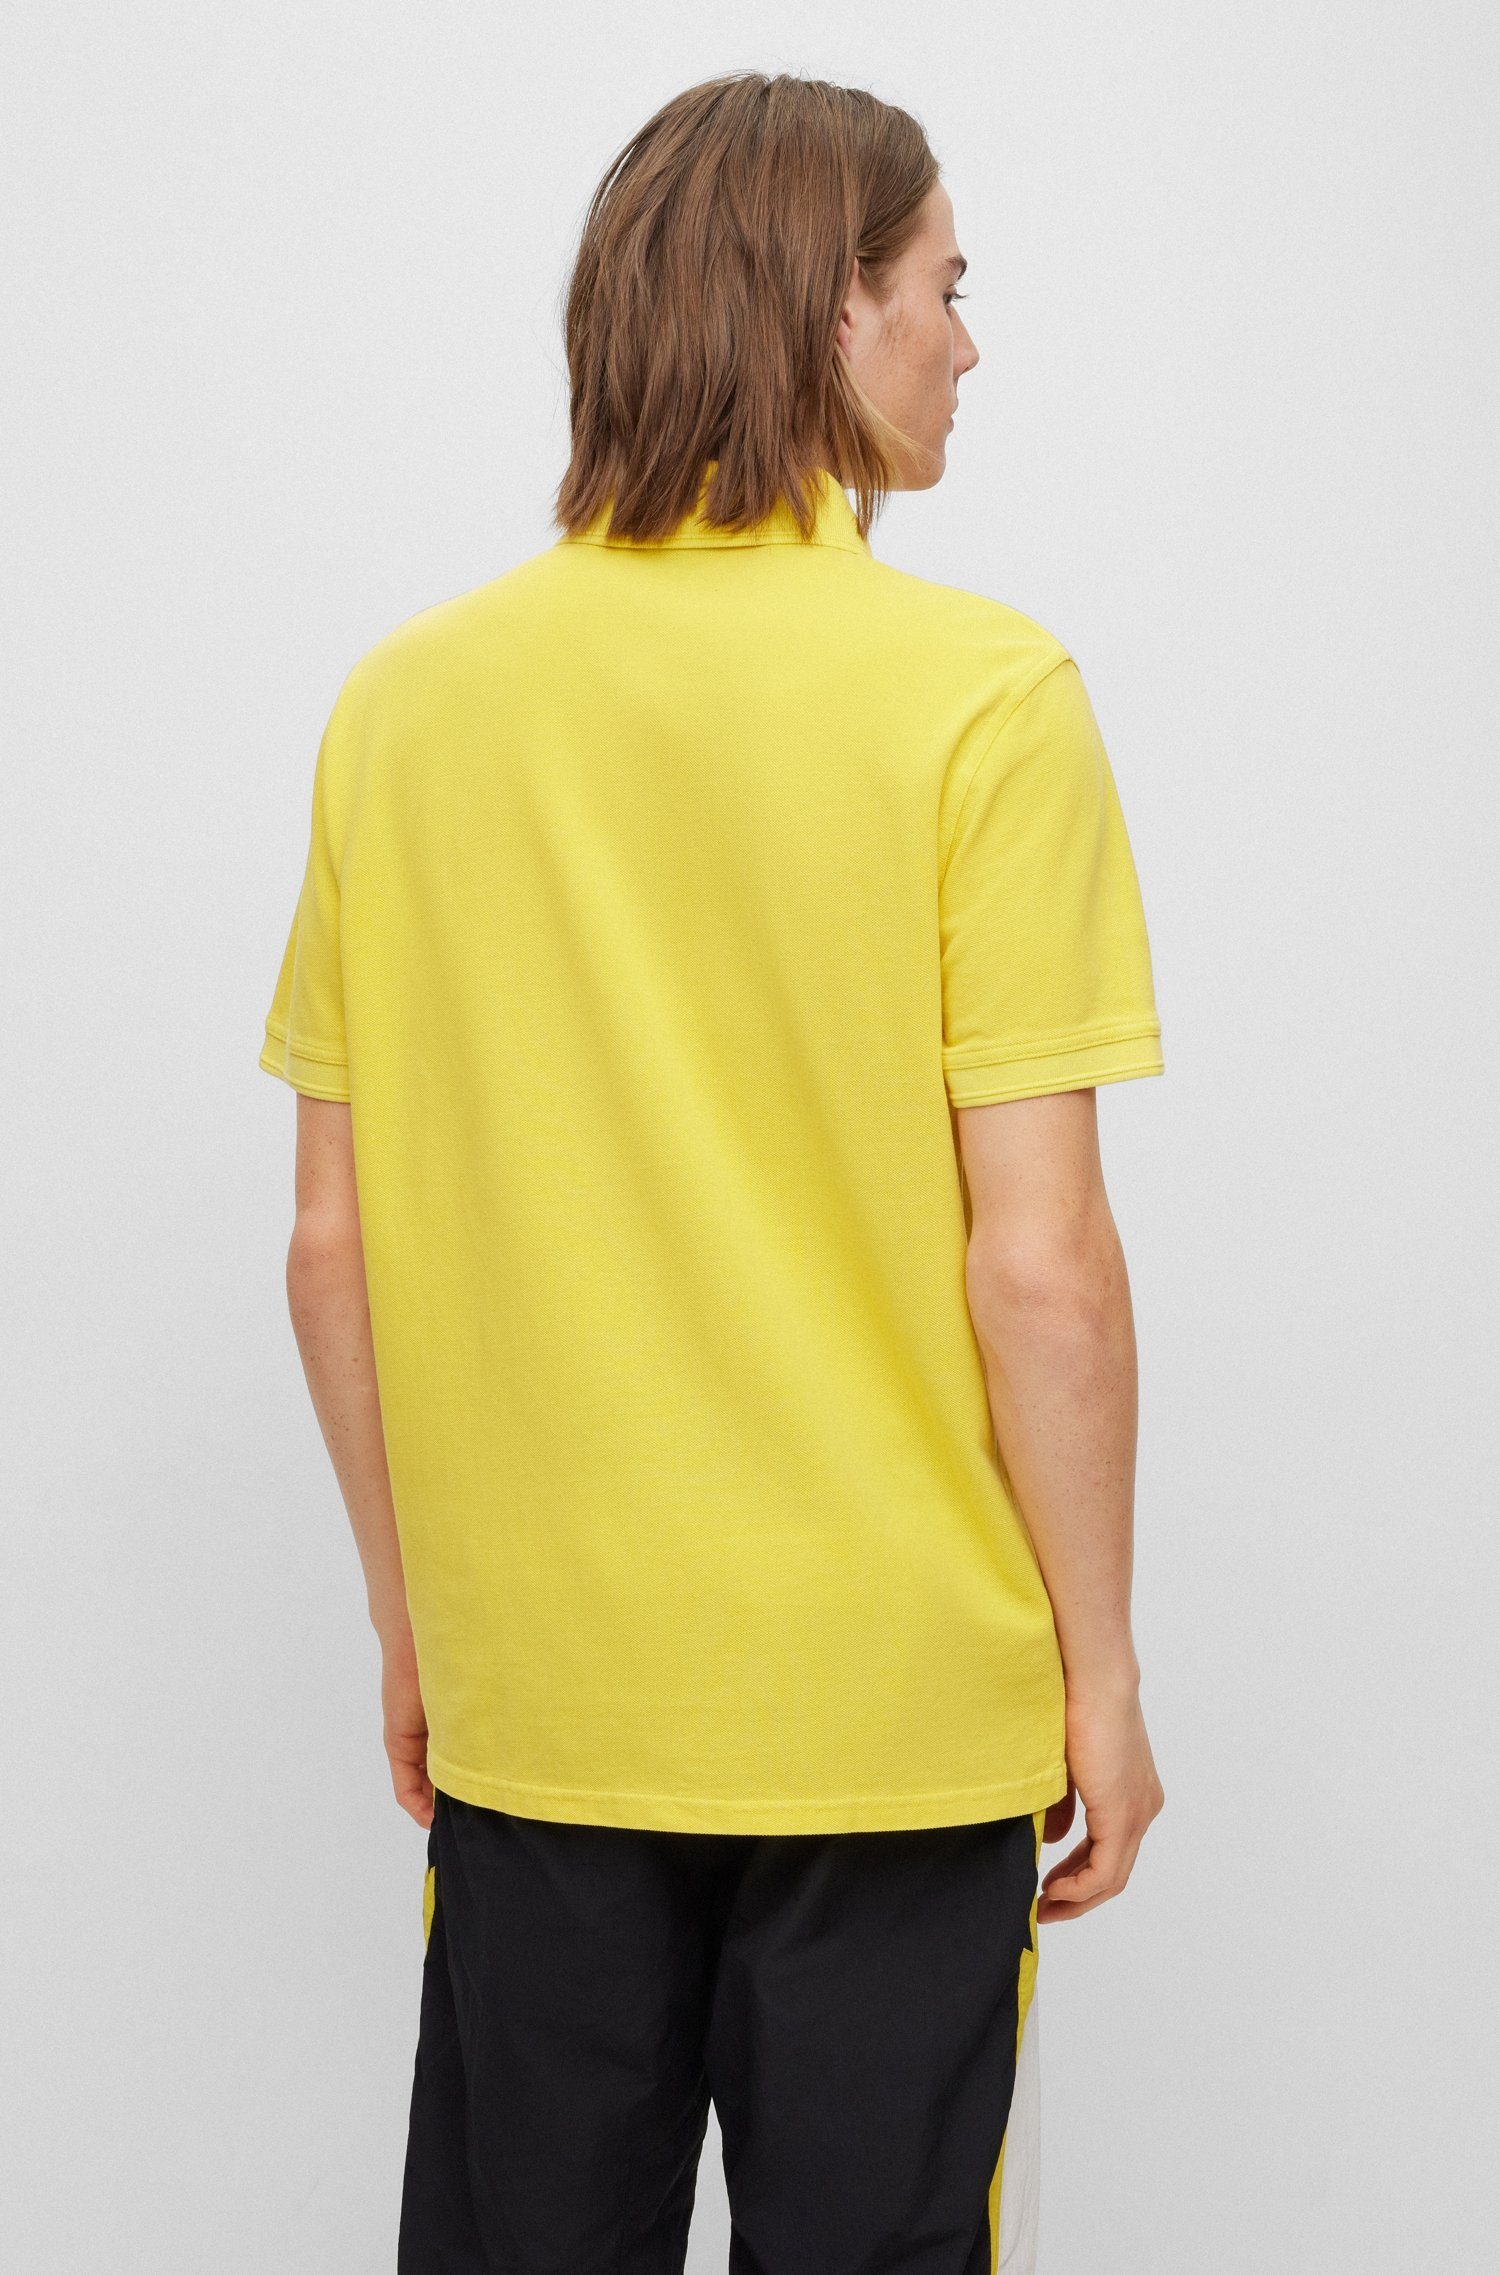 BOSS ORANGE Poloshirt Prime 10203439 dezentem mit 01 Brust Light/Pastel_Yellow der Logoschriftzug auf